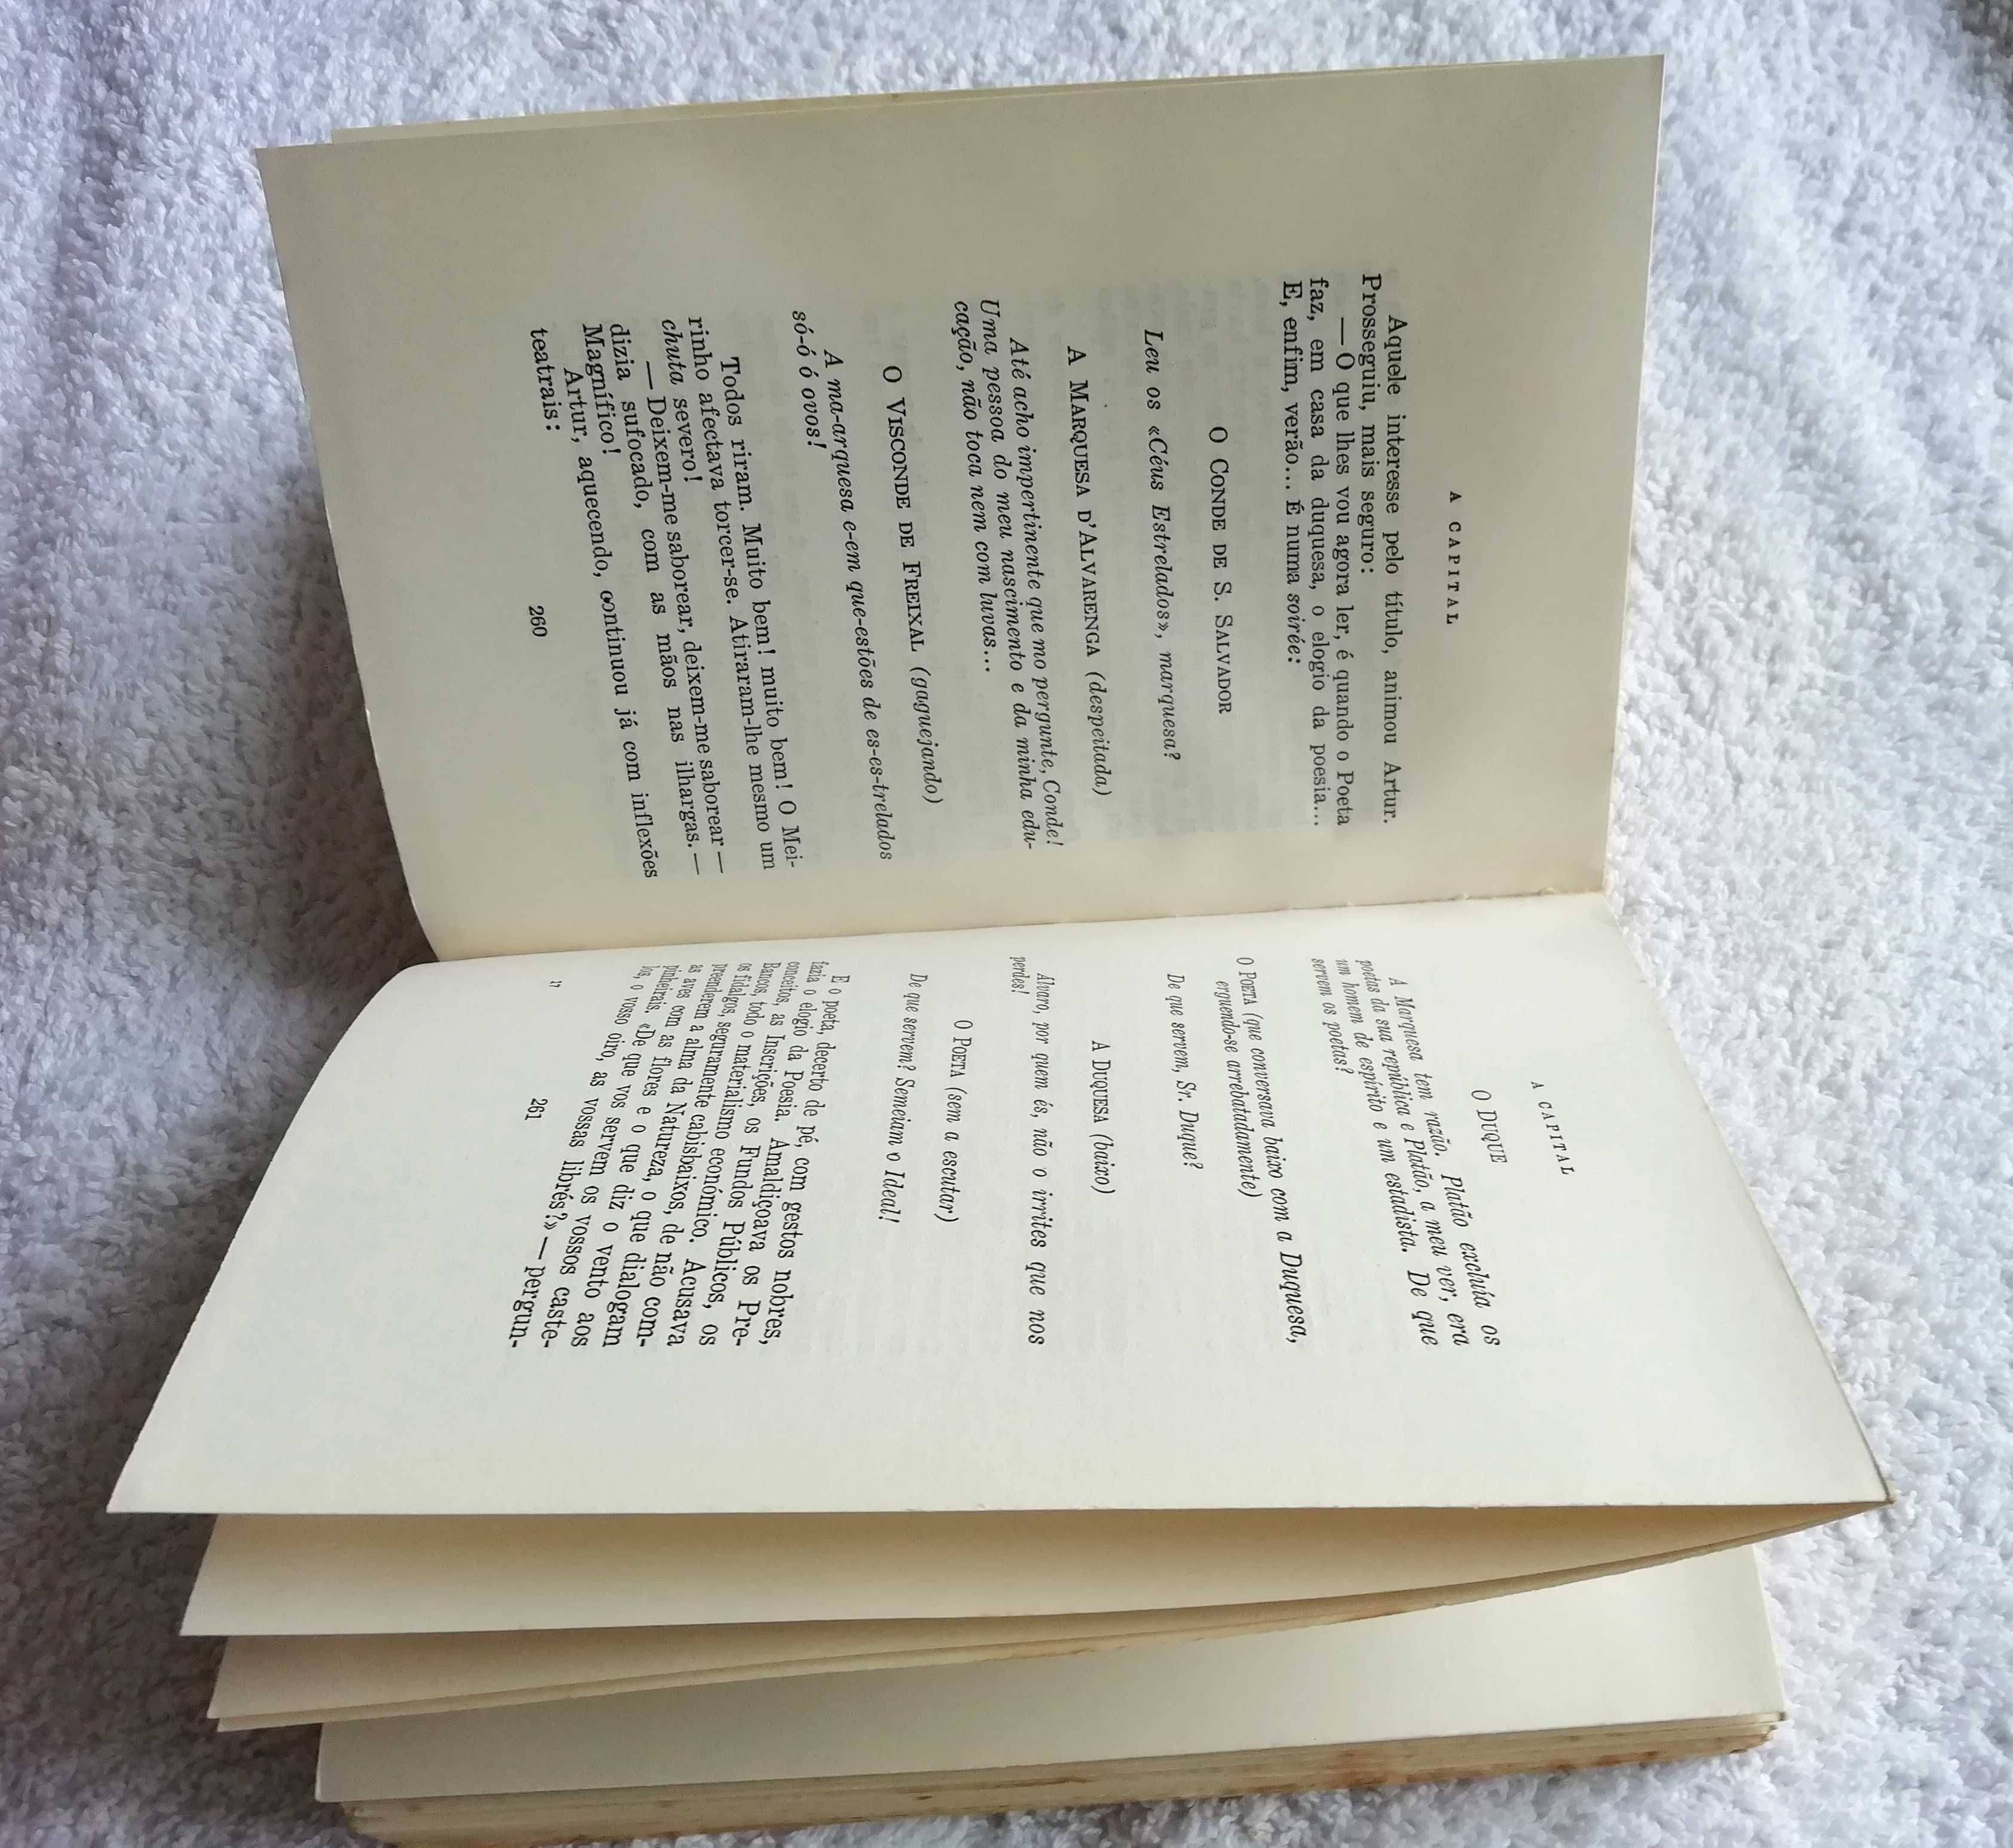 A capital – Livro antigo de Eça de Queiroz (1971 – 9ª Edição)